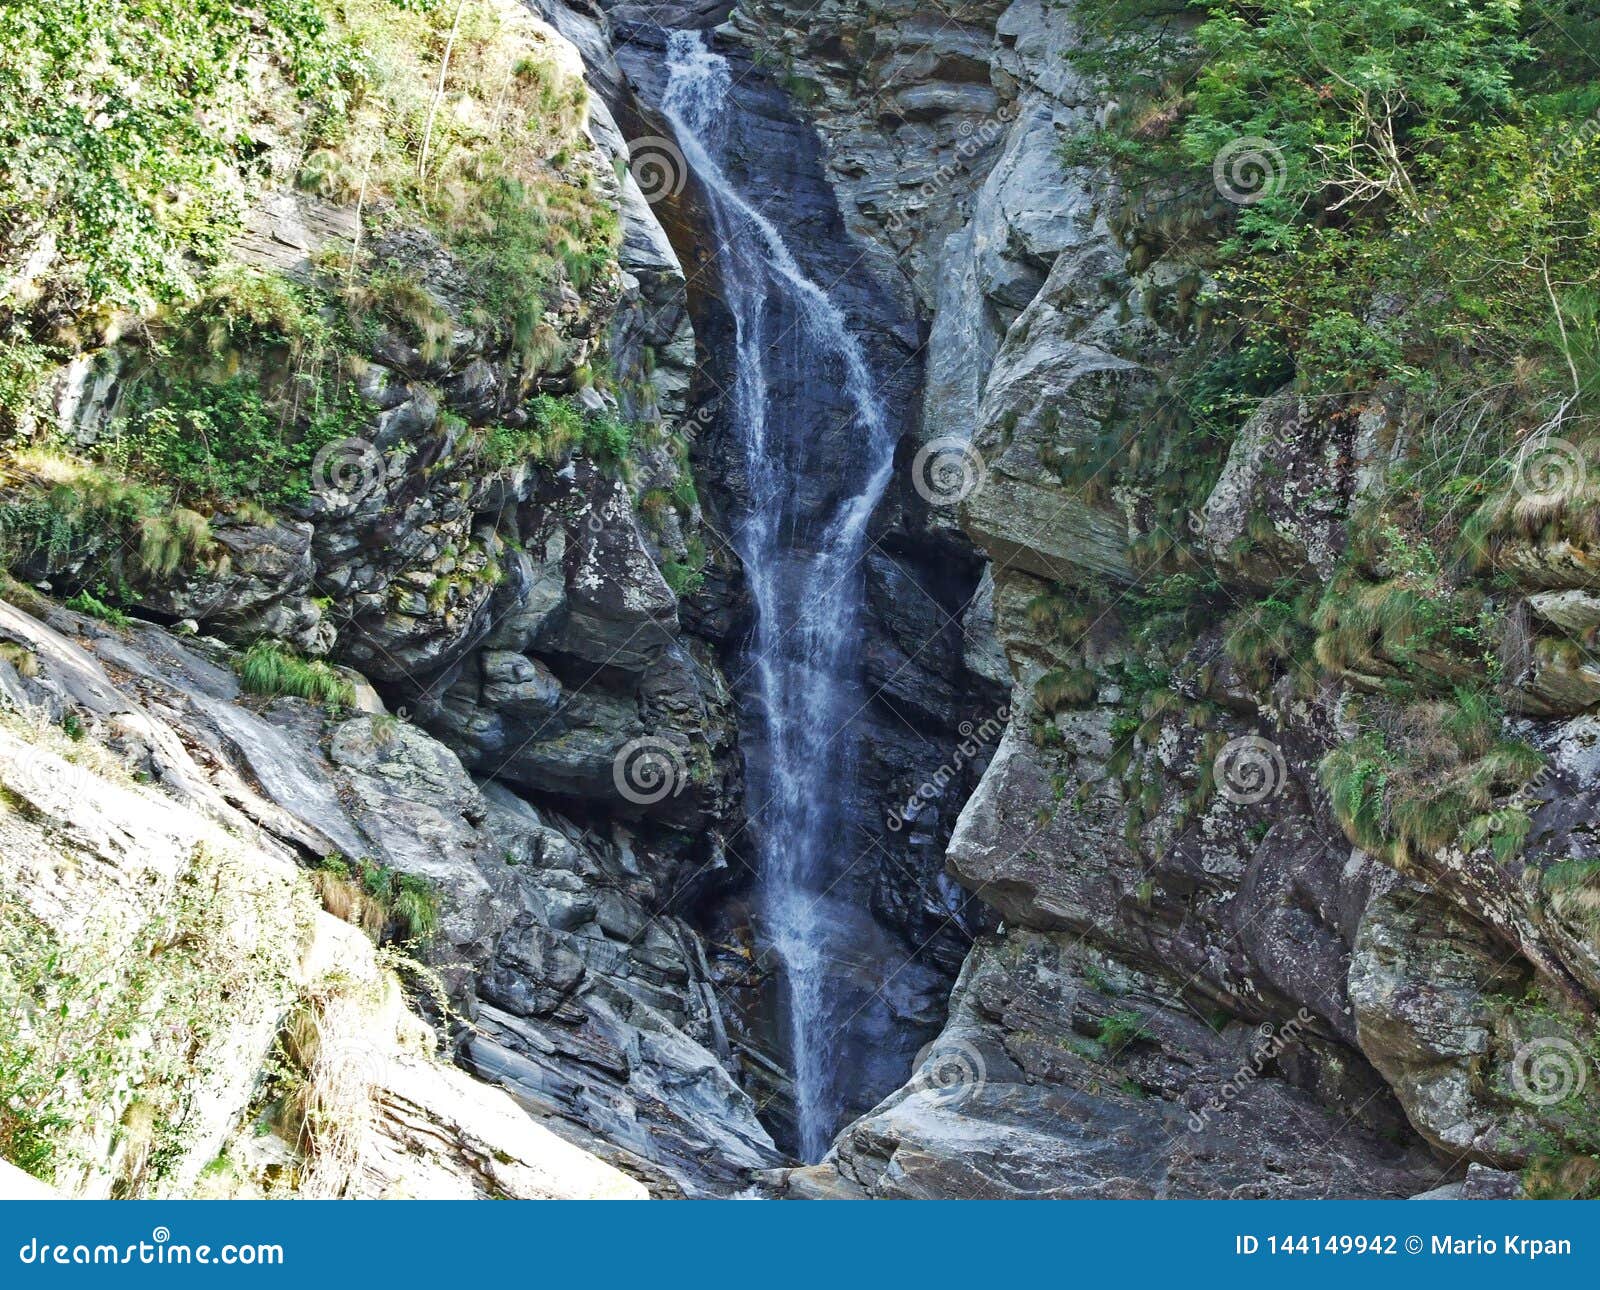 giumaglio`s waterfall or la cascata di giumaglio in vallemaggia, magic valley or valle magia valle maggia